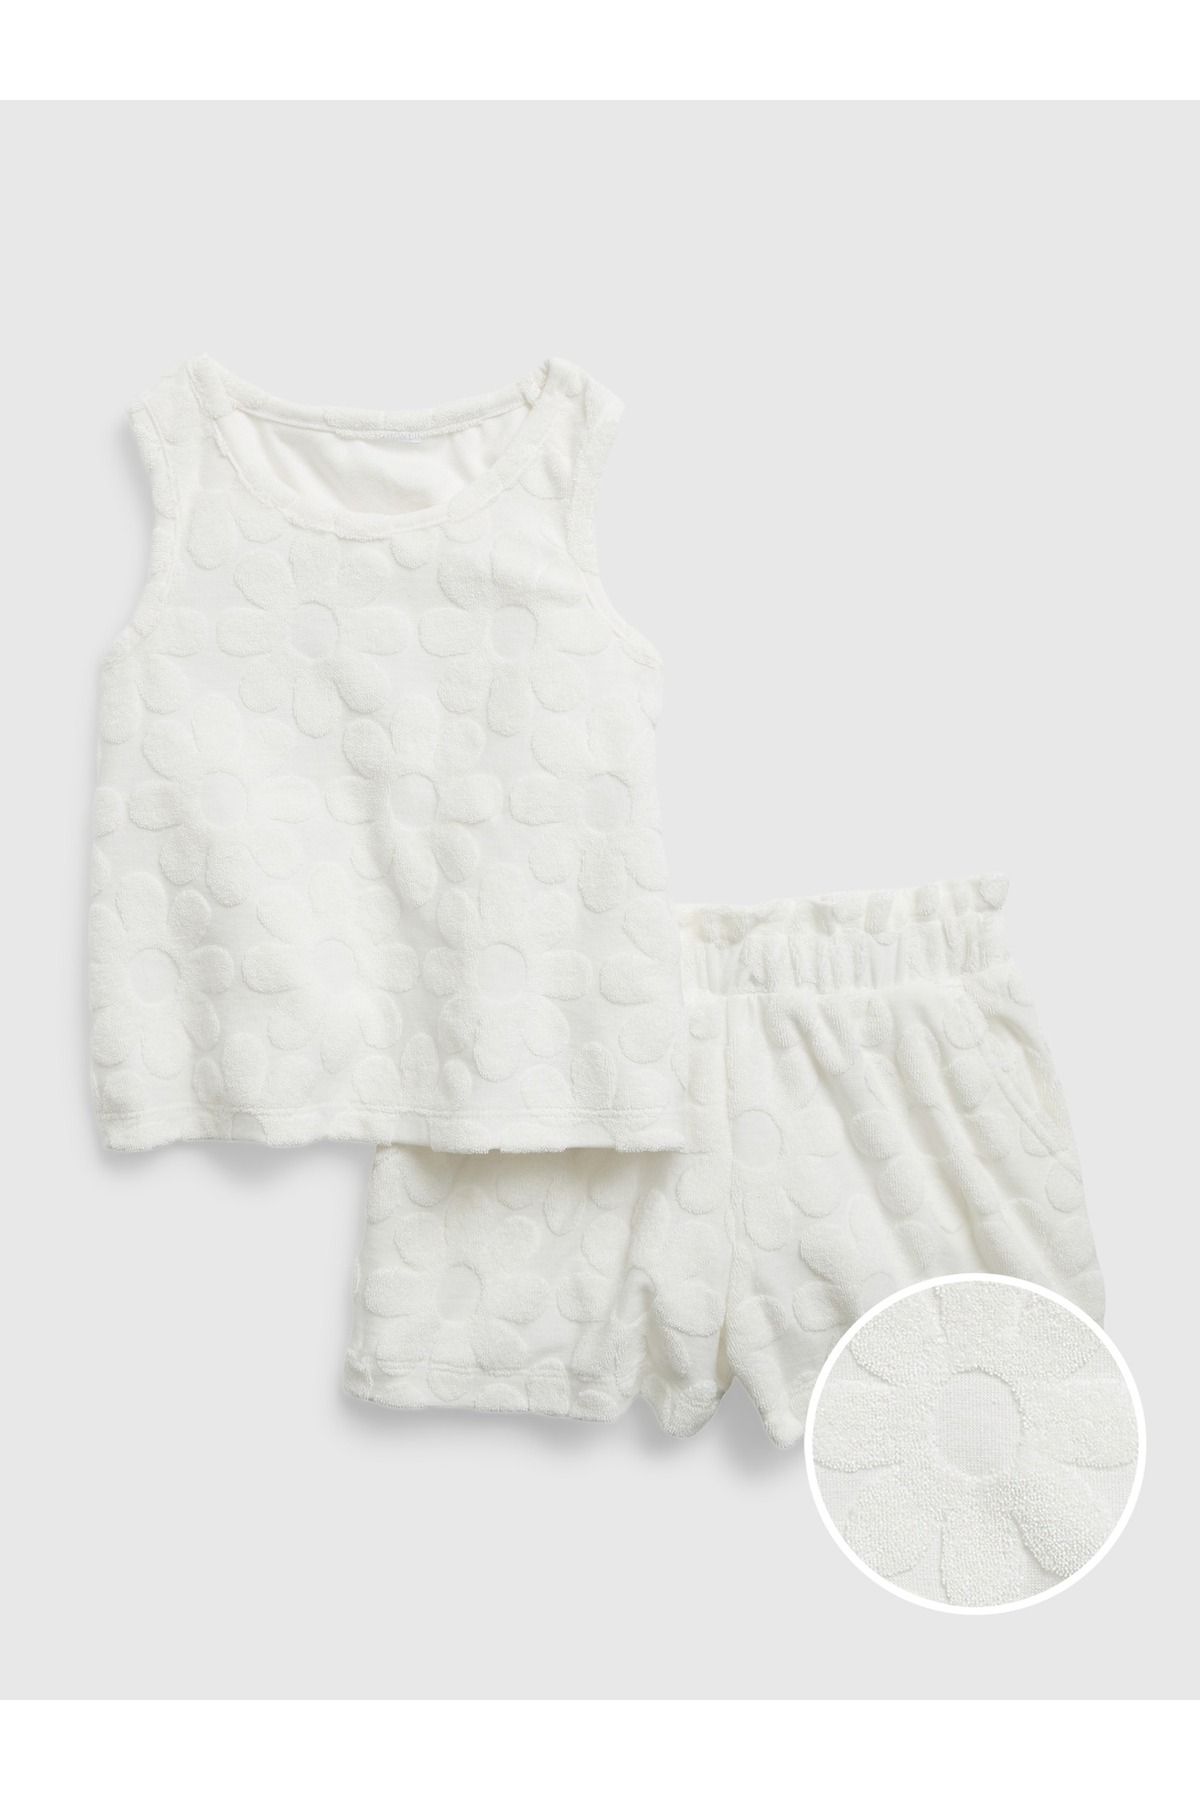 GAP Kız Bebek Beyaz Çiçek Işlemeli Havlu Kumaş Outfit Set